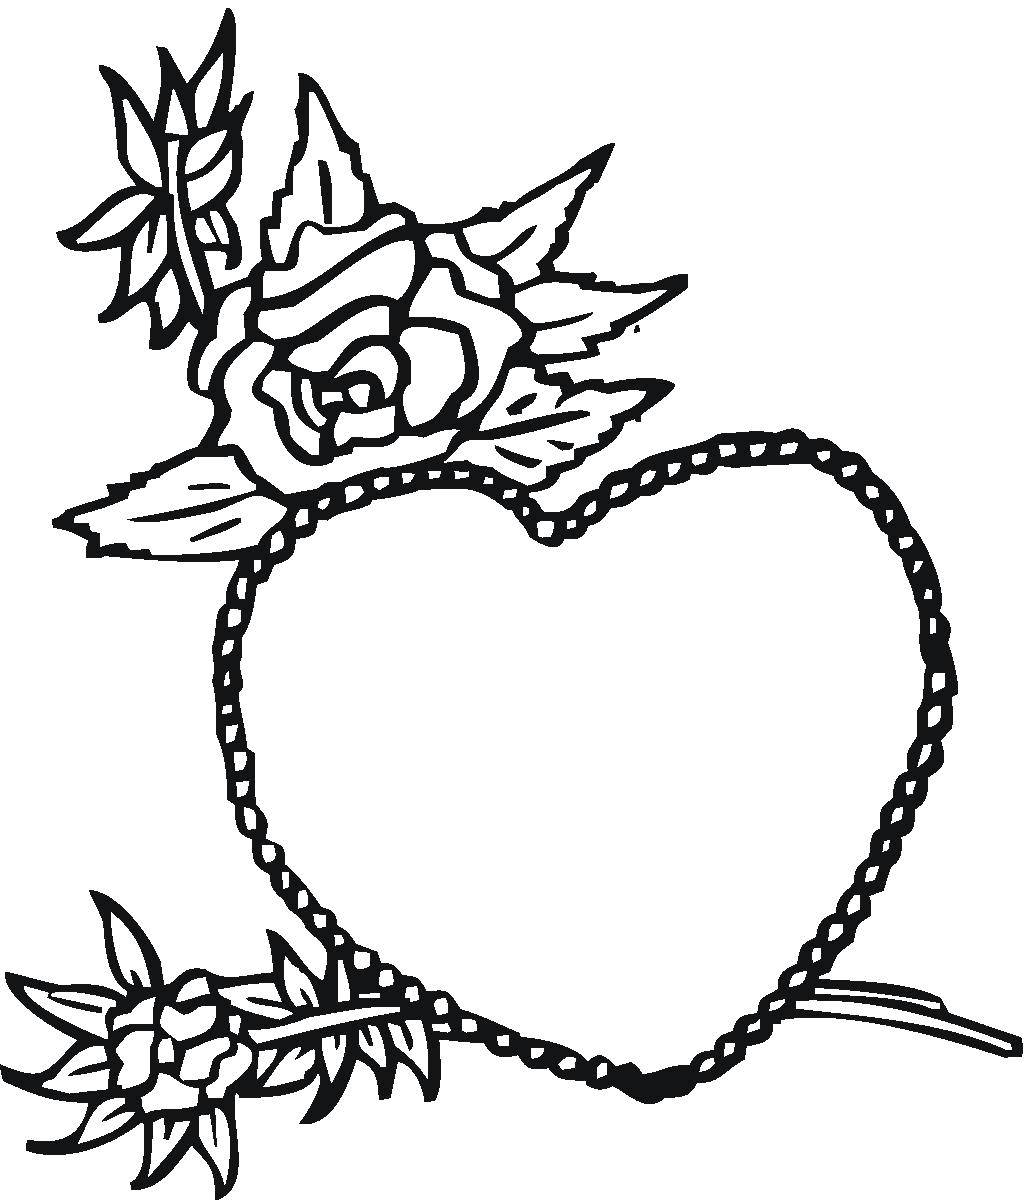 Раскраска сердечко с изображением роз (розы)